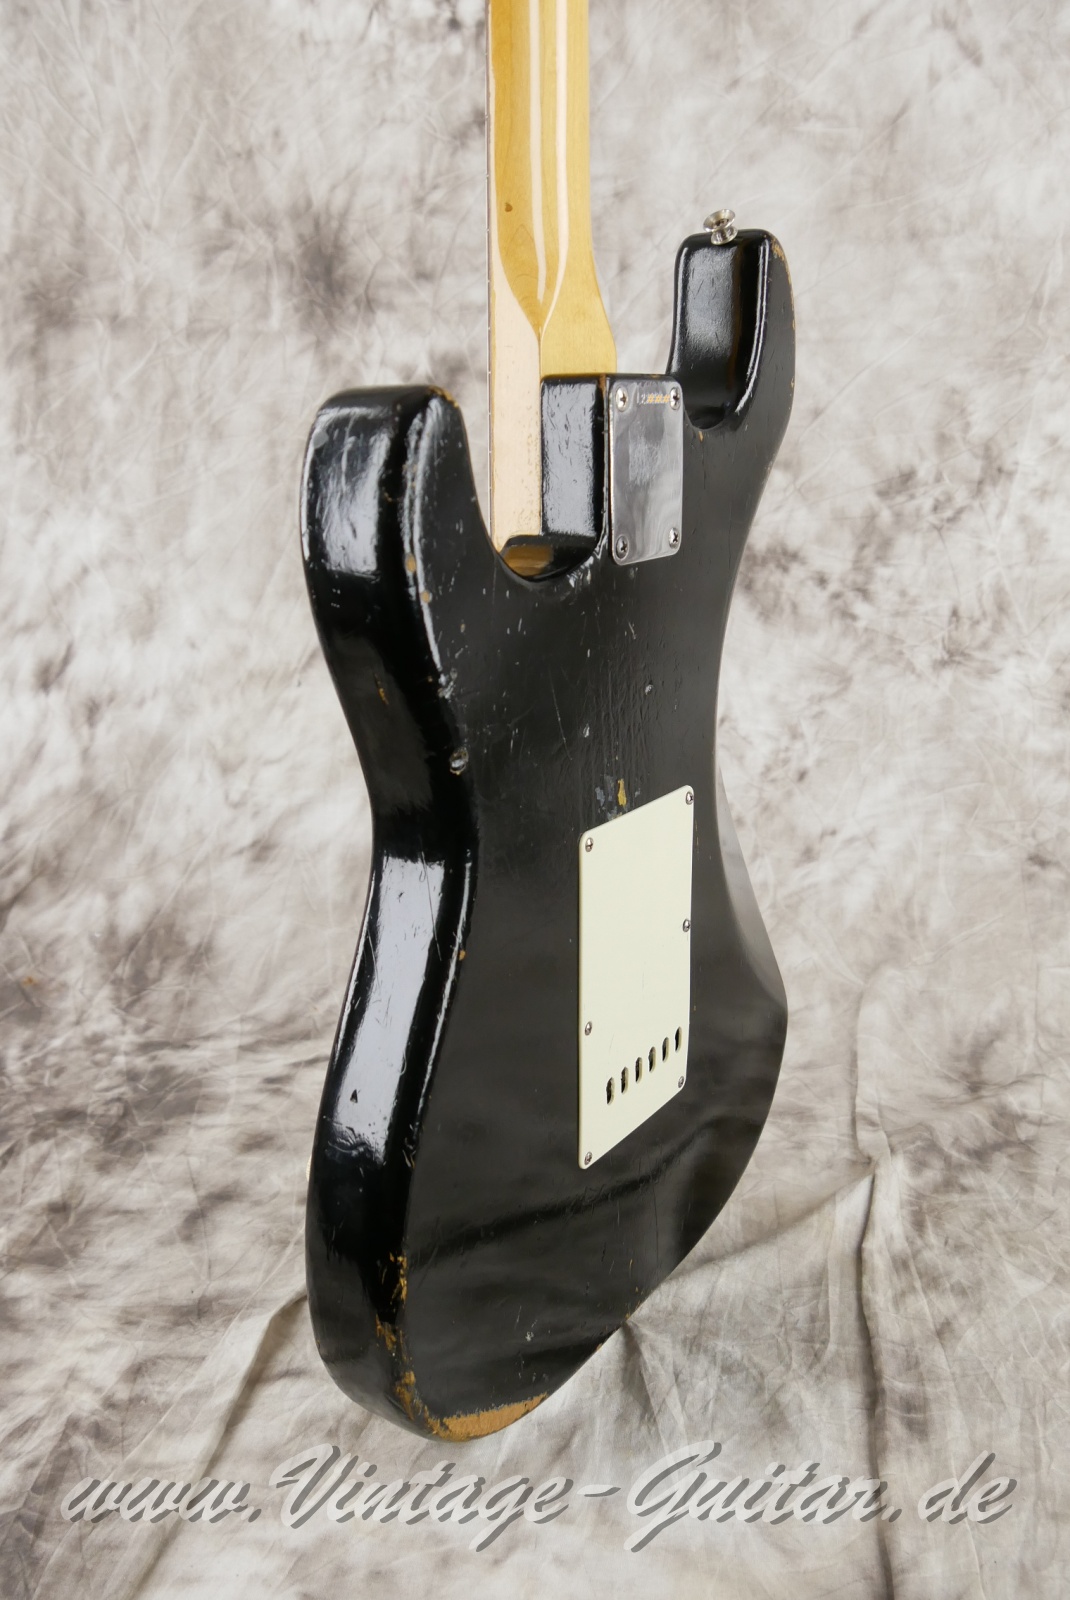 Fender-Stratocaster-1964-body-with-1969-neck-black-011.jpg